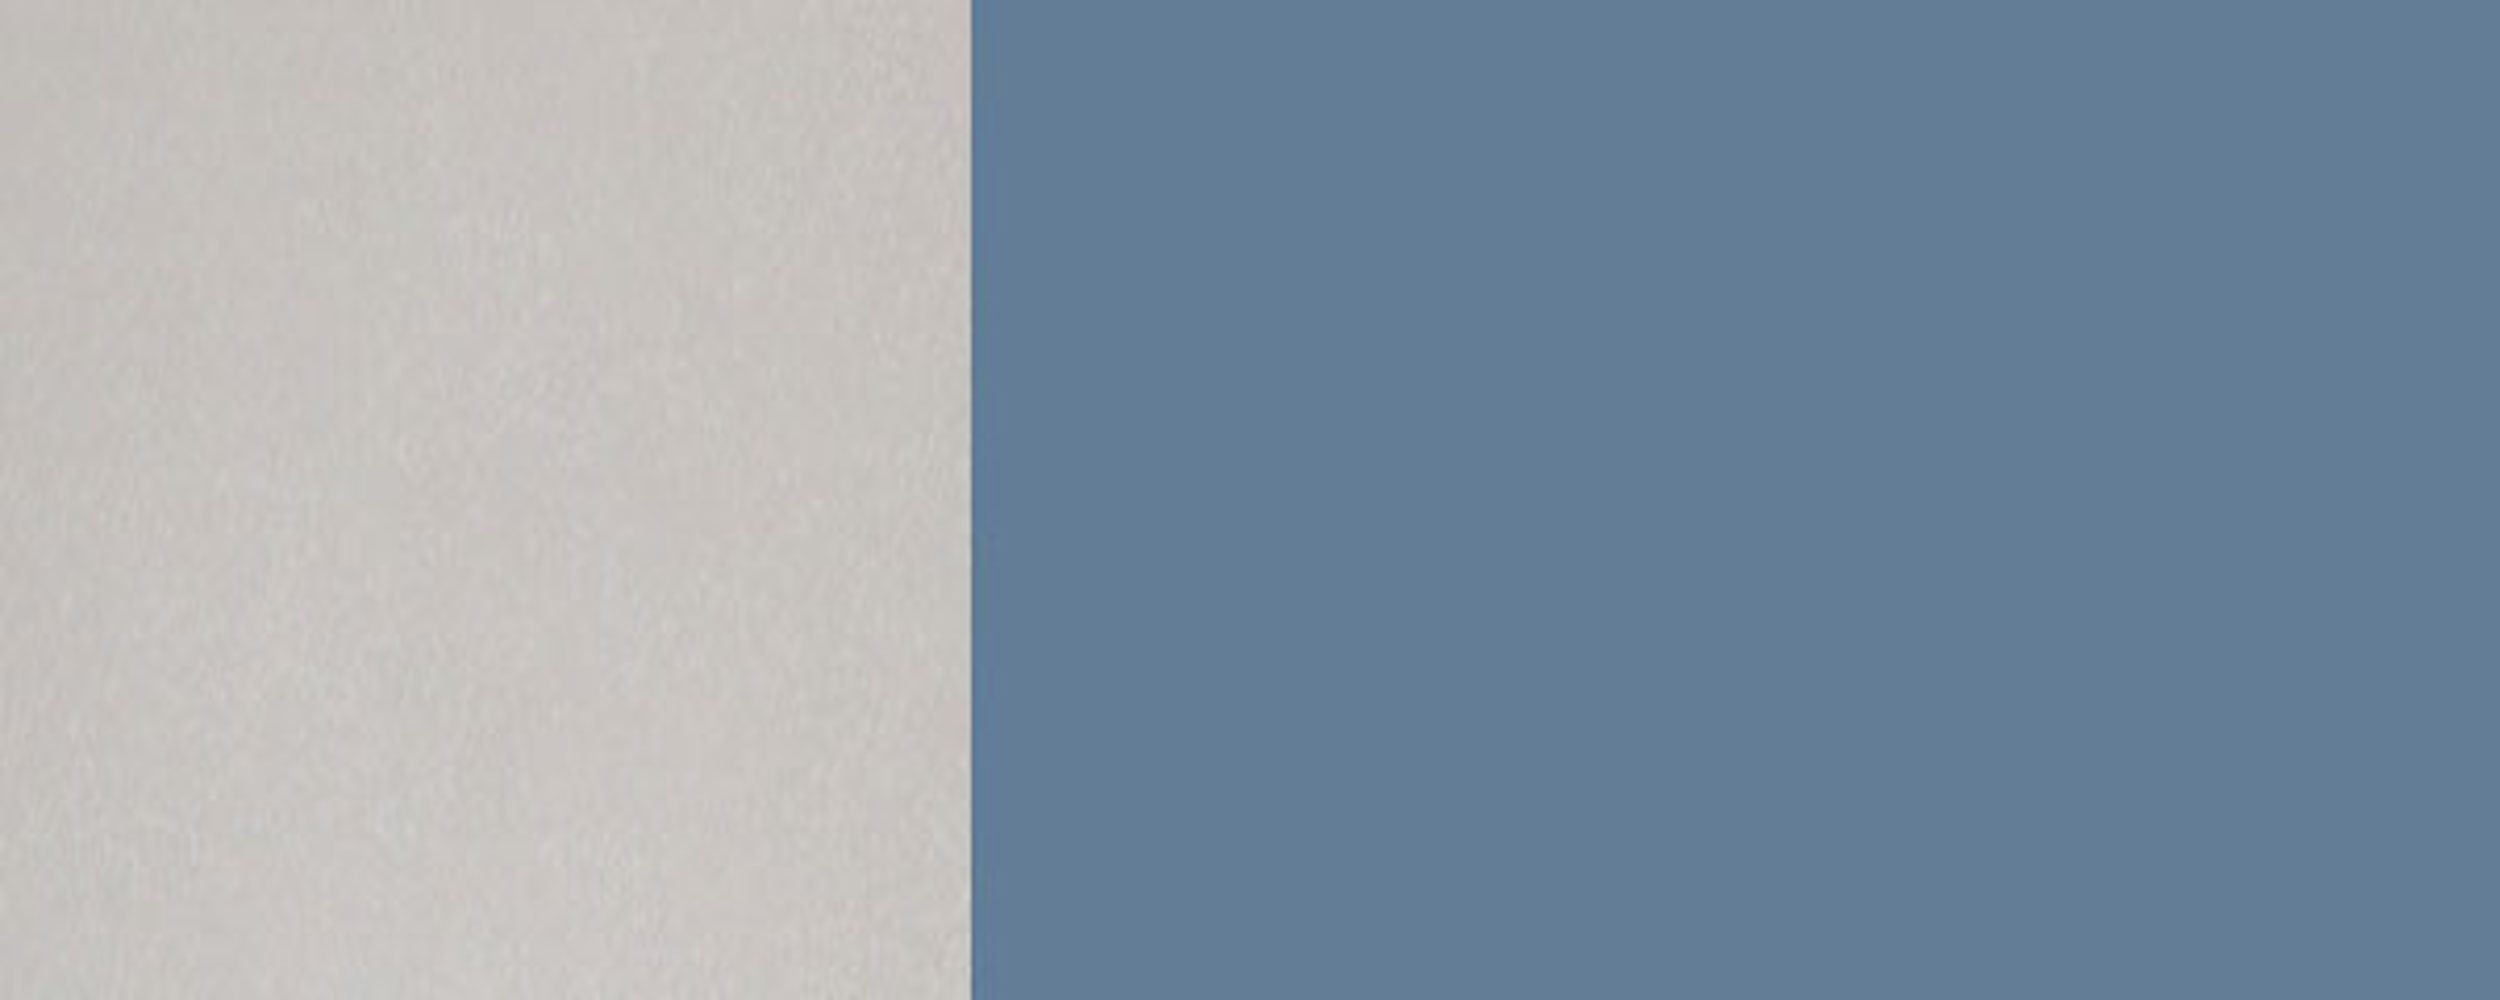 Hochglanz und Korpusfarbe Front-, Florence Glashängeschrank grifflos Ausführung 50cm taubenblau 1-türig RAL (Florence) wählbar 5014 Feldmann-Wohnen